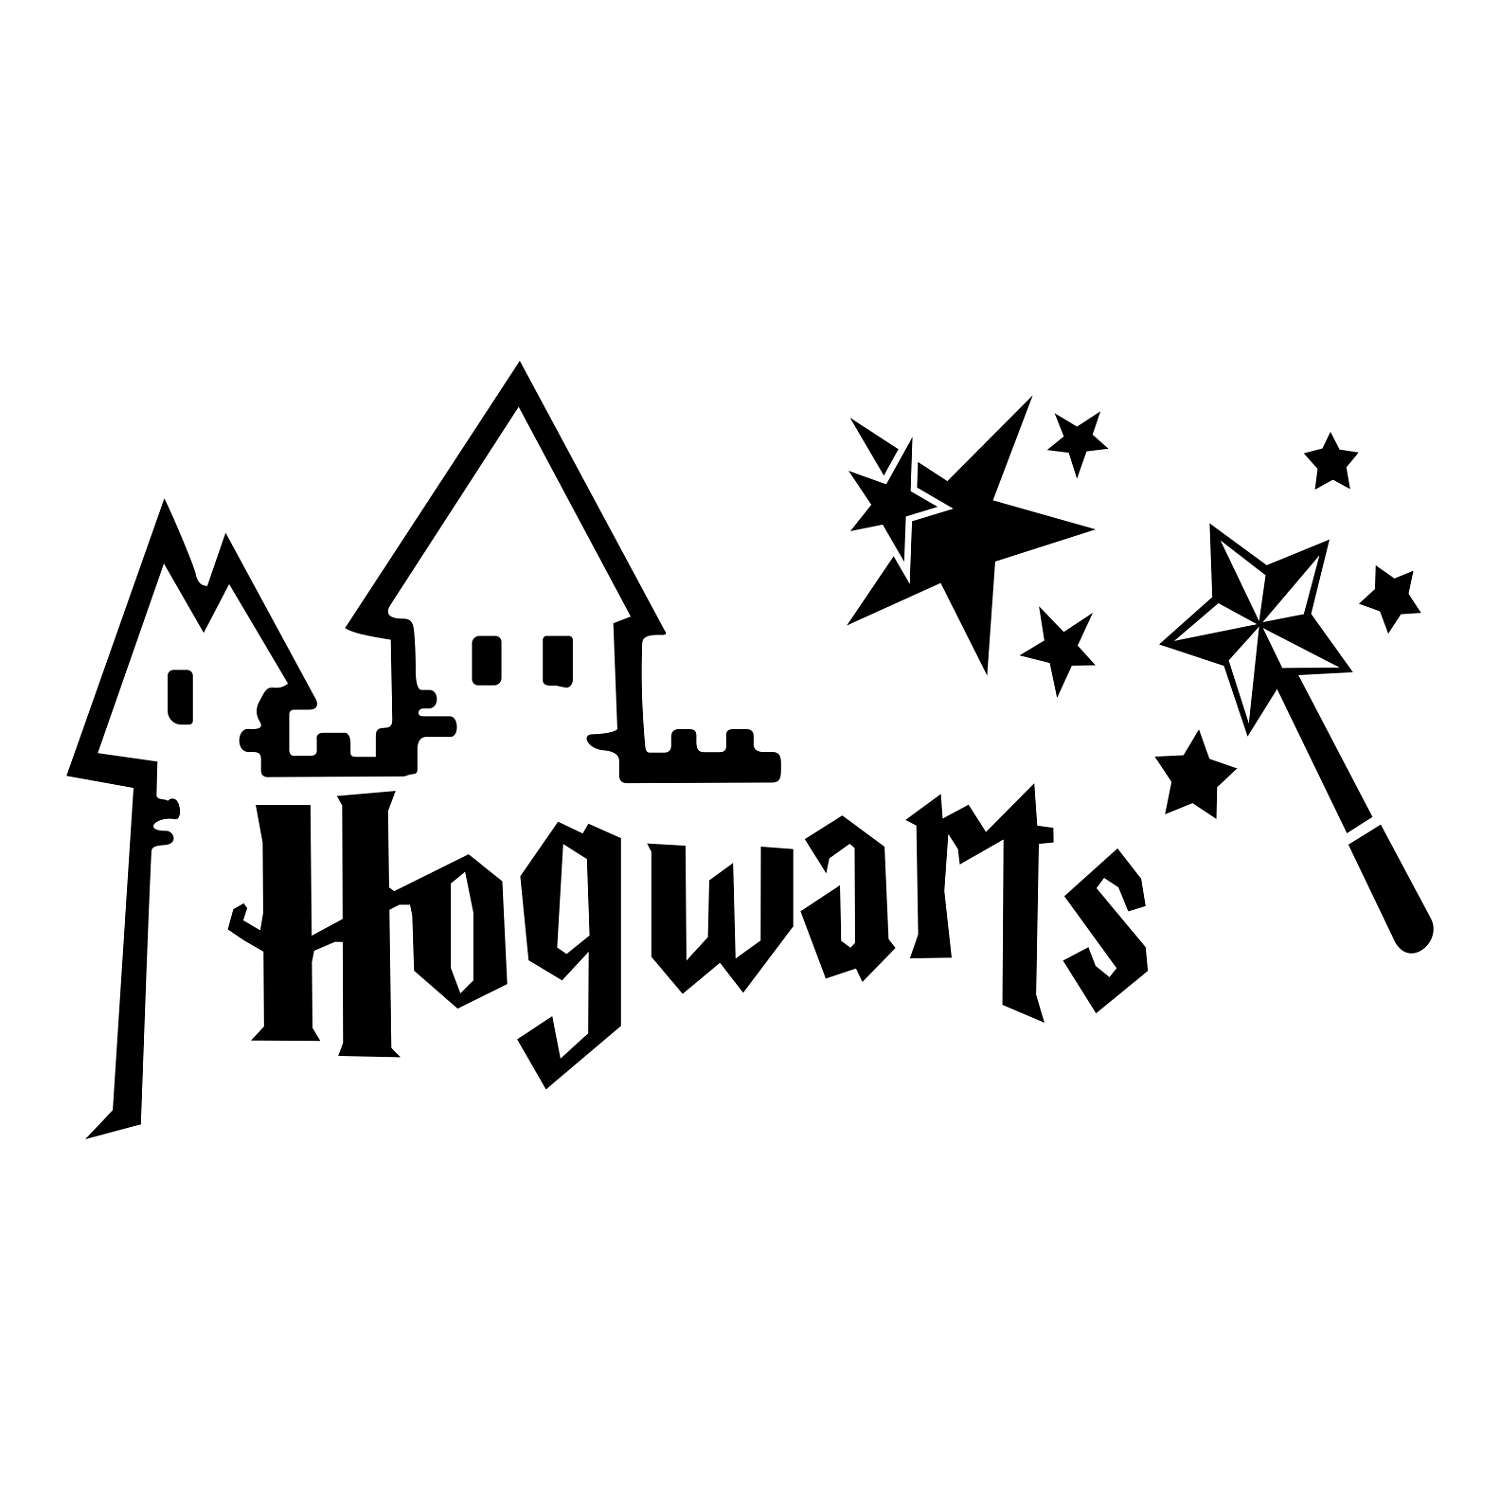 Hogwarts graphics svg dxf. Black clipart harry potter